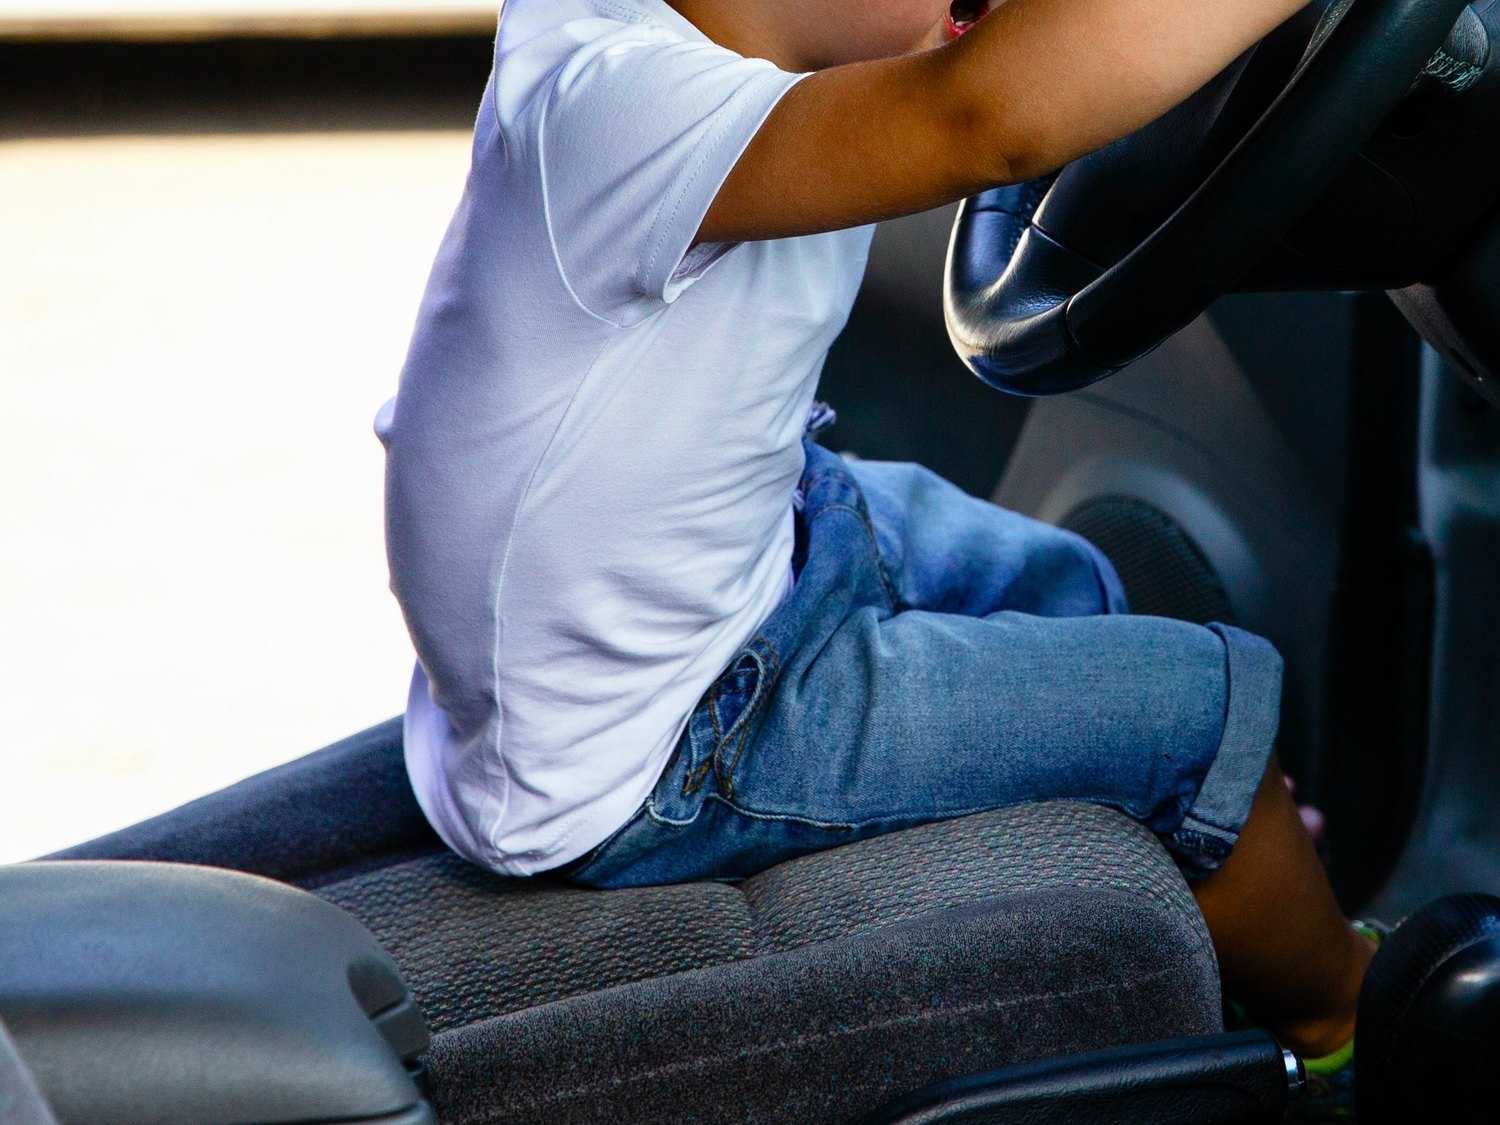 Interceptan un coche conducido por un niño de 9 años en Sitges con su madre de copiloto